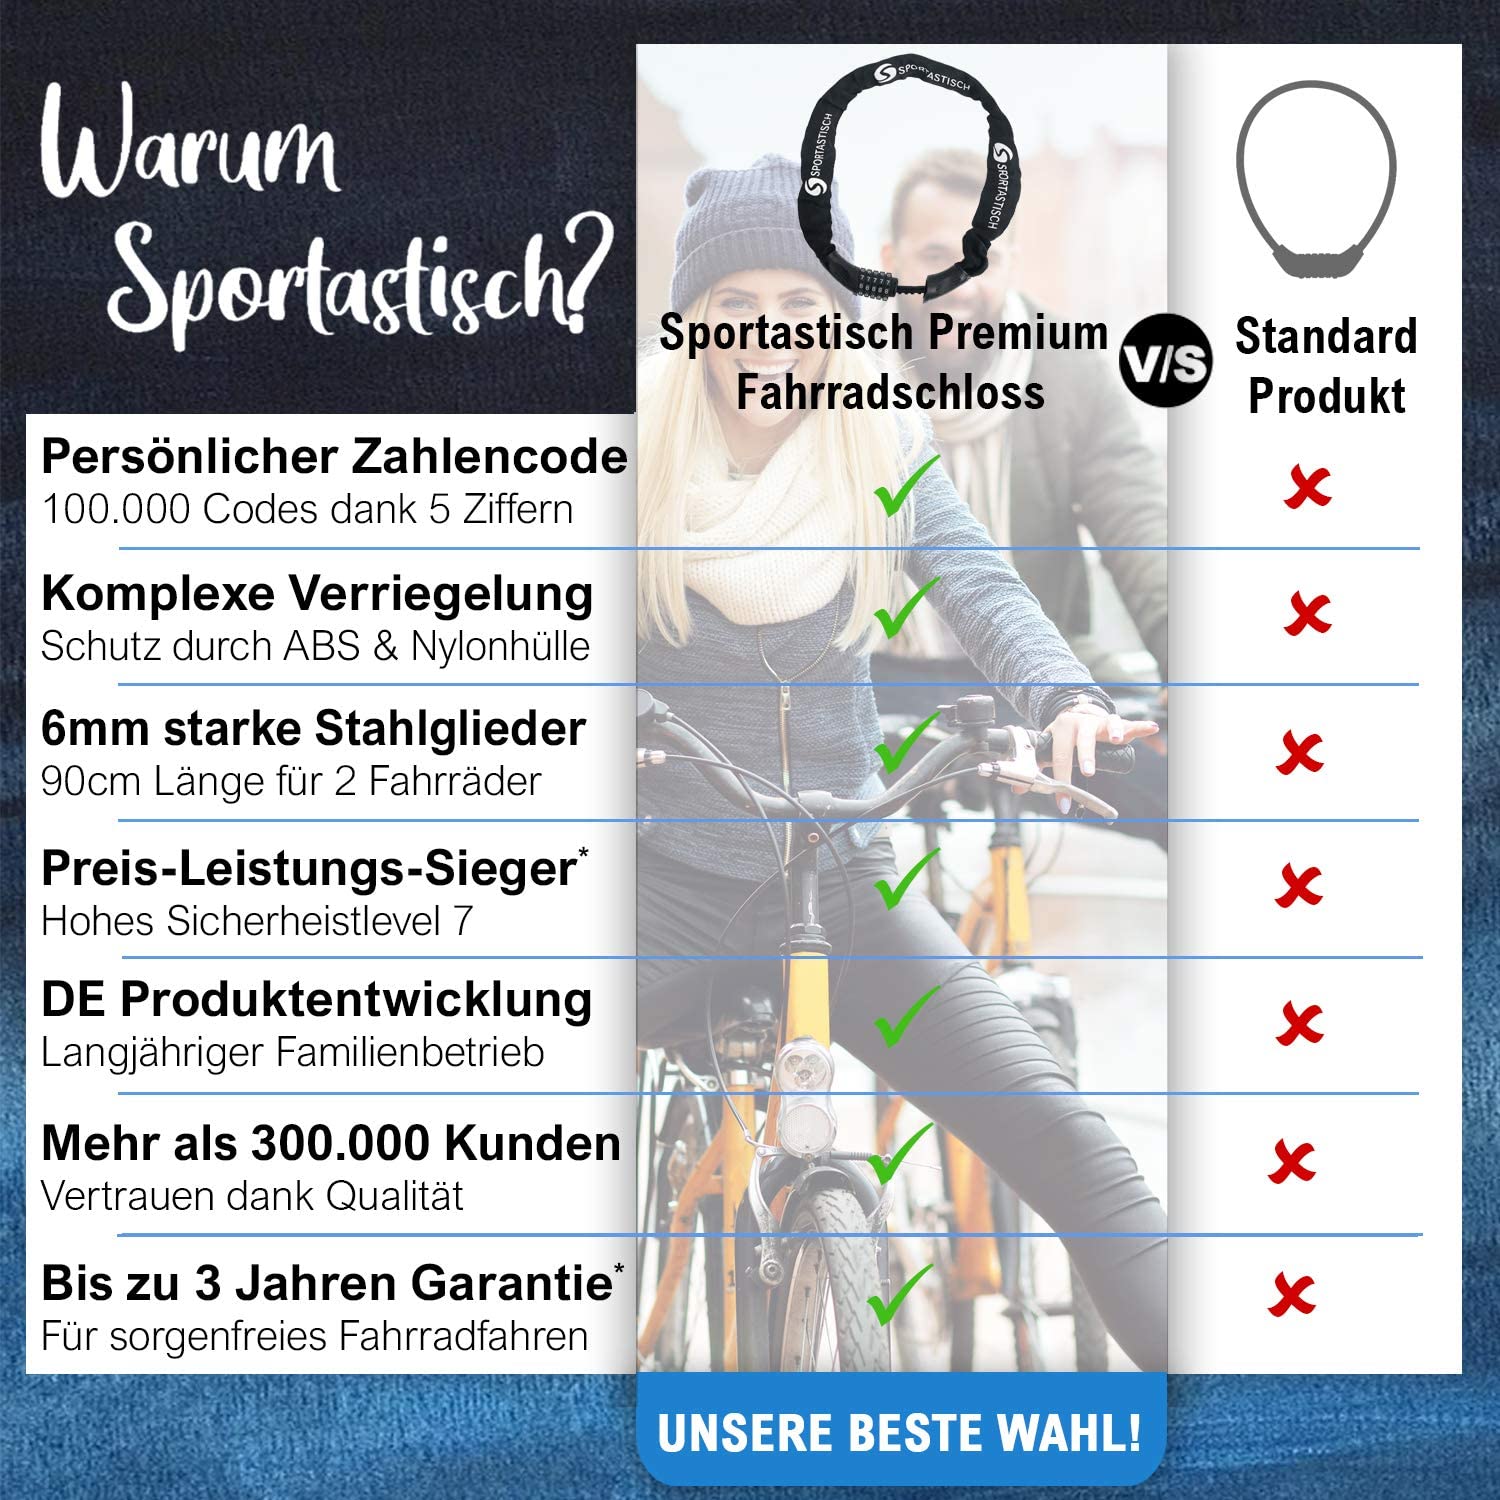 Hochwertiger Velo-Schutz mit Premium Fahrradschlösser